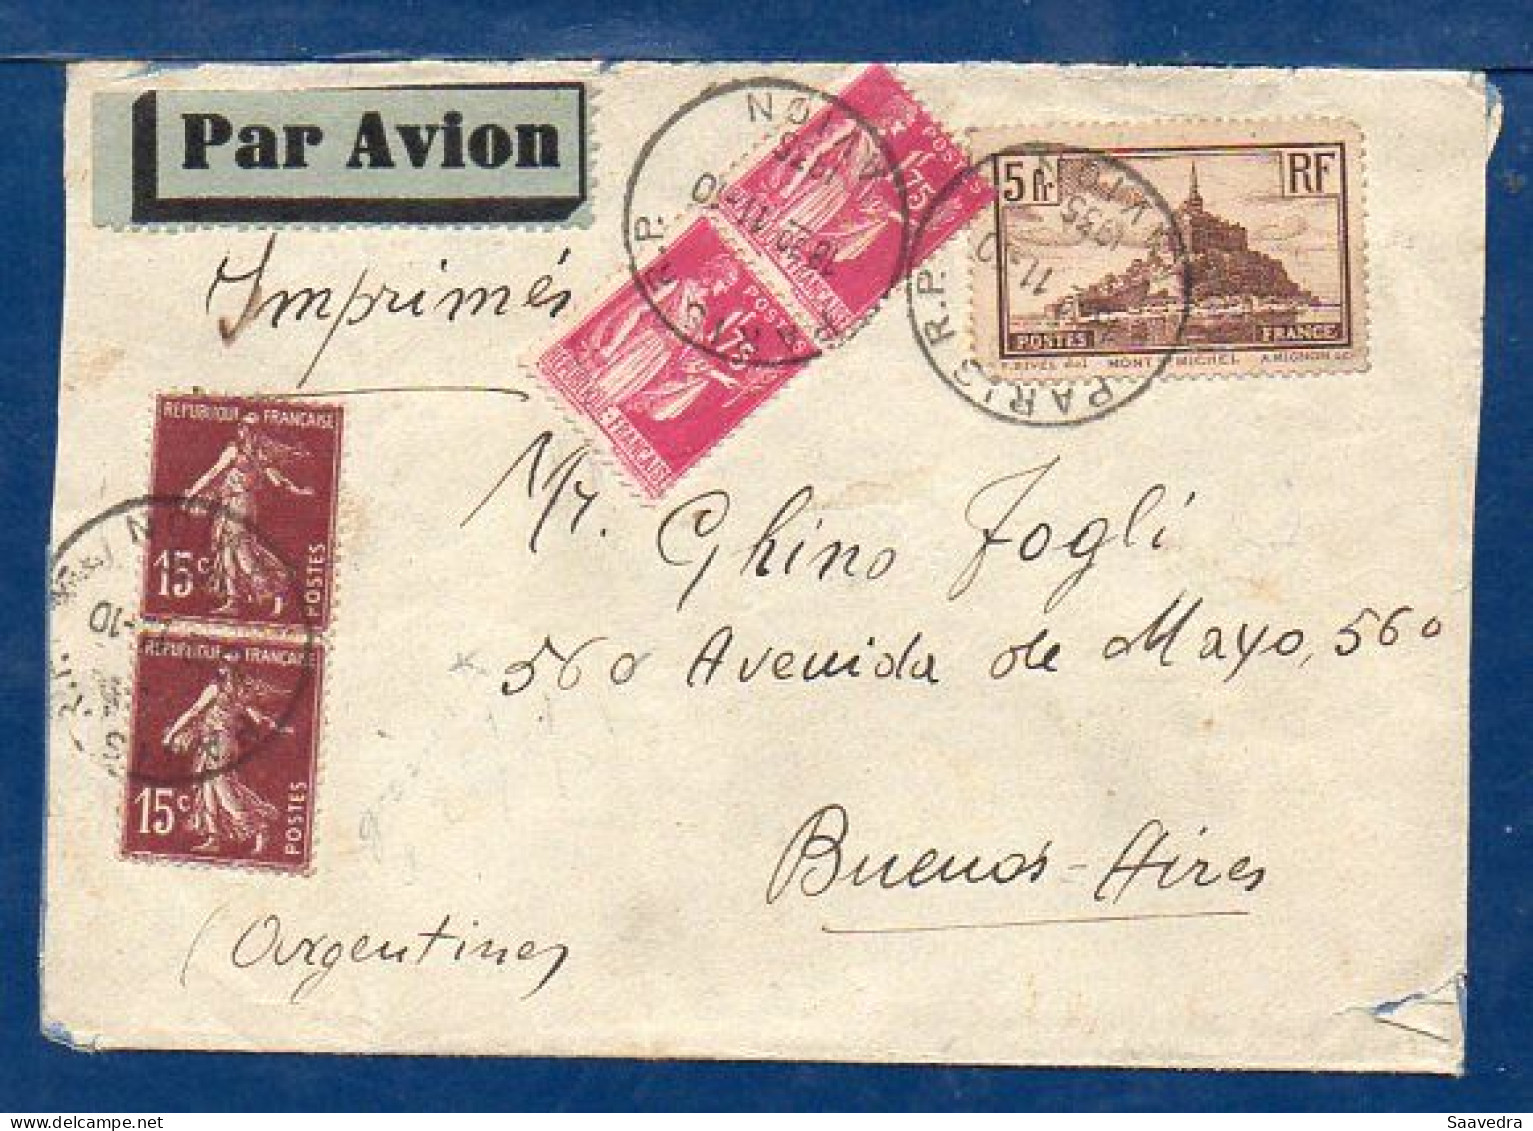 France To Argentina, 1935, Via Air France  (006) - Aéreo